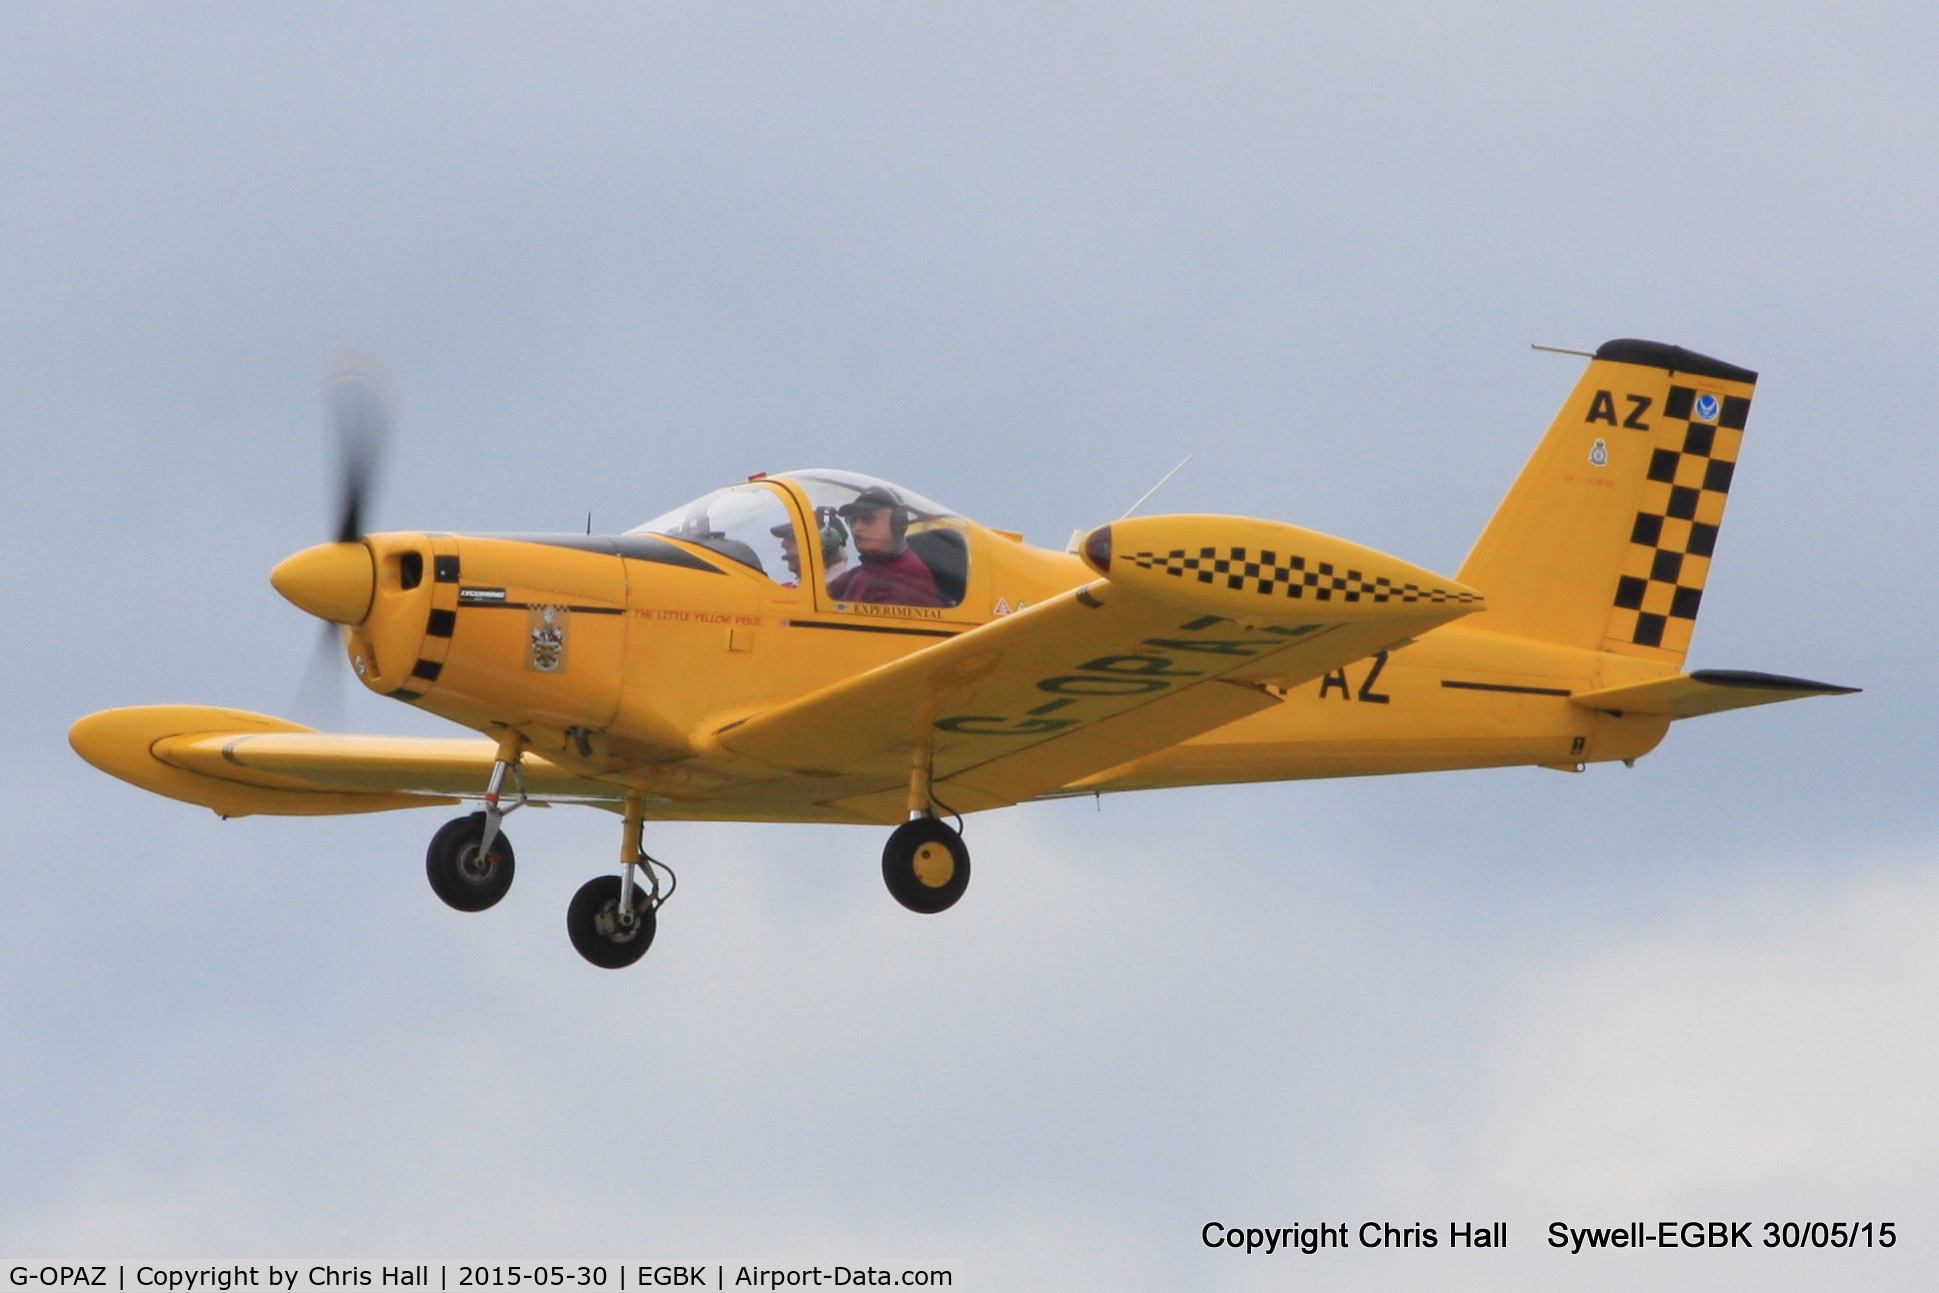 G-OPAZ, 2001 Pazmany PL-2 C/N PFA 069-10673, at Aeroexpo 2015